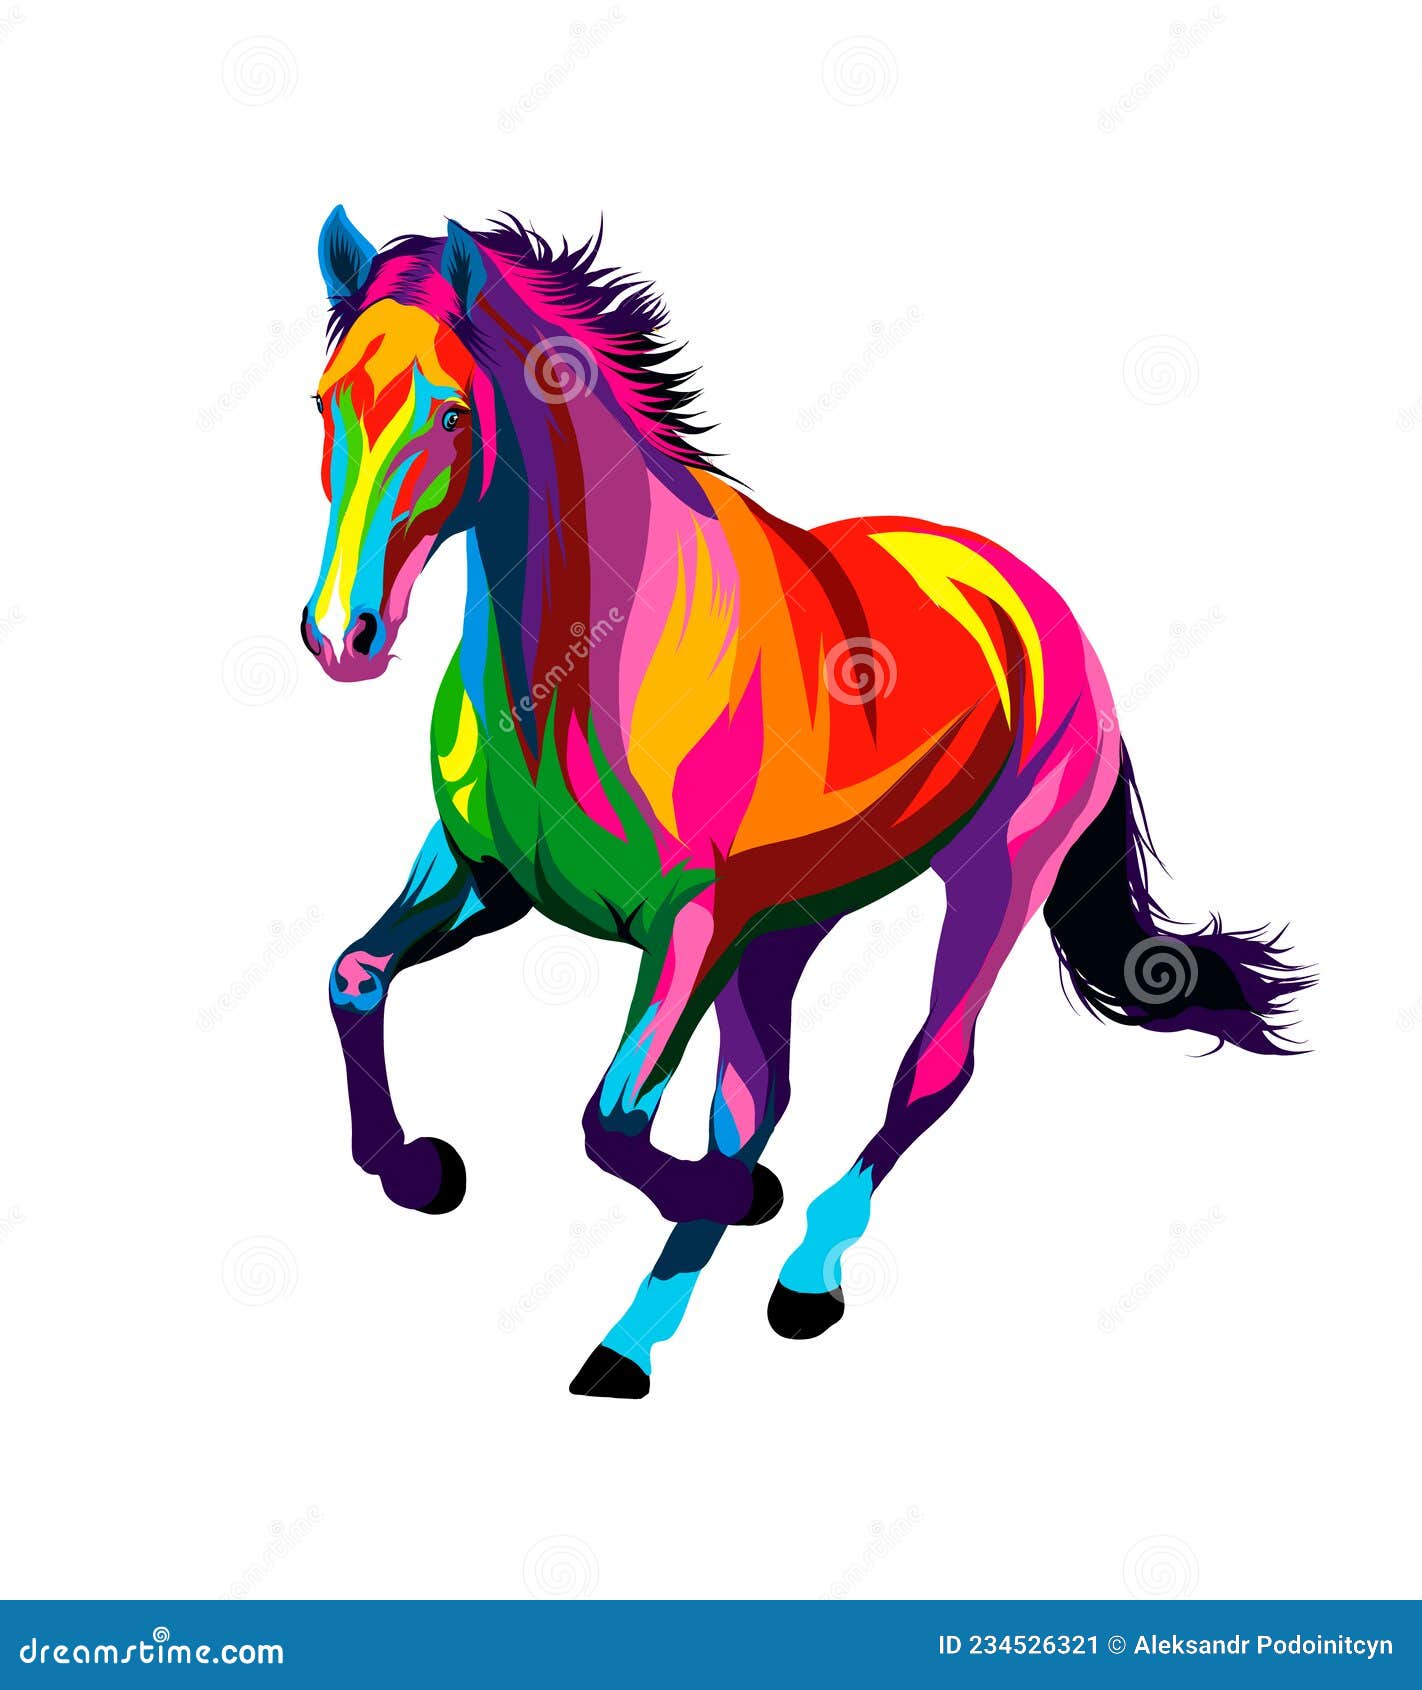 Desenho de cavalo passo a passo  Cavalo desenho, Desenho de animais,  Desenhos de animais realistas